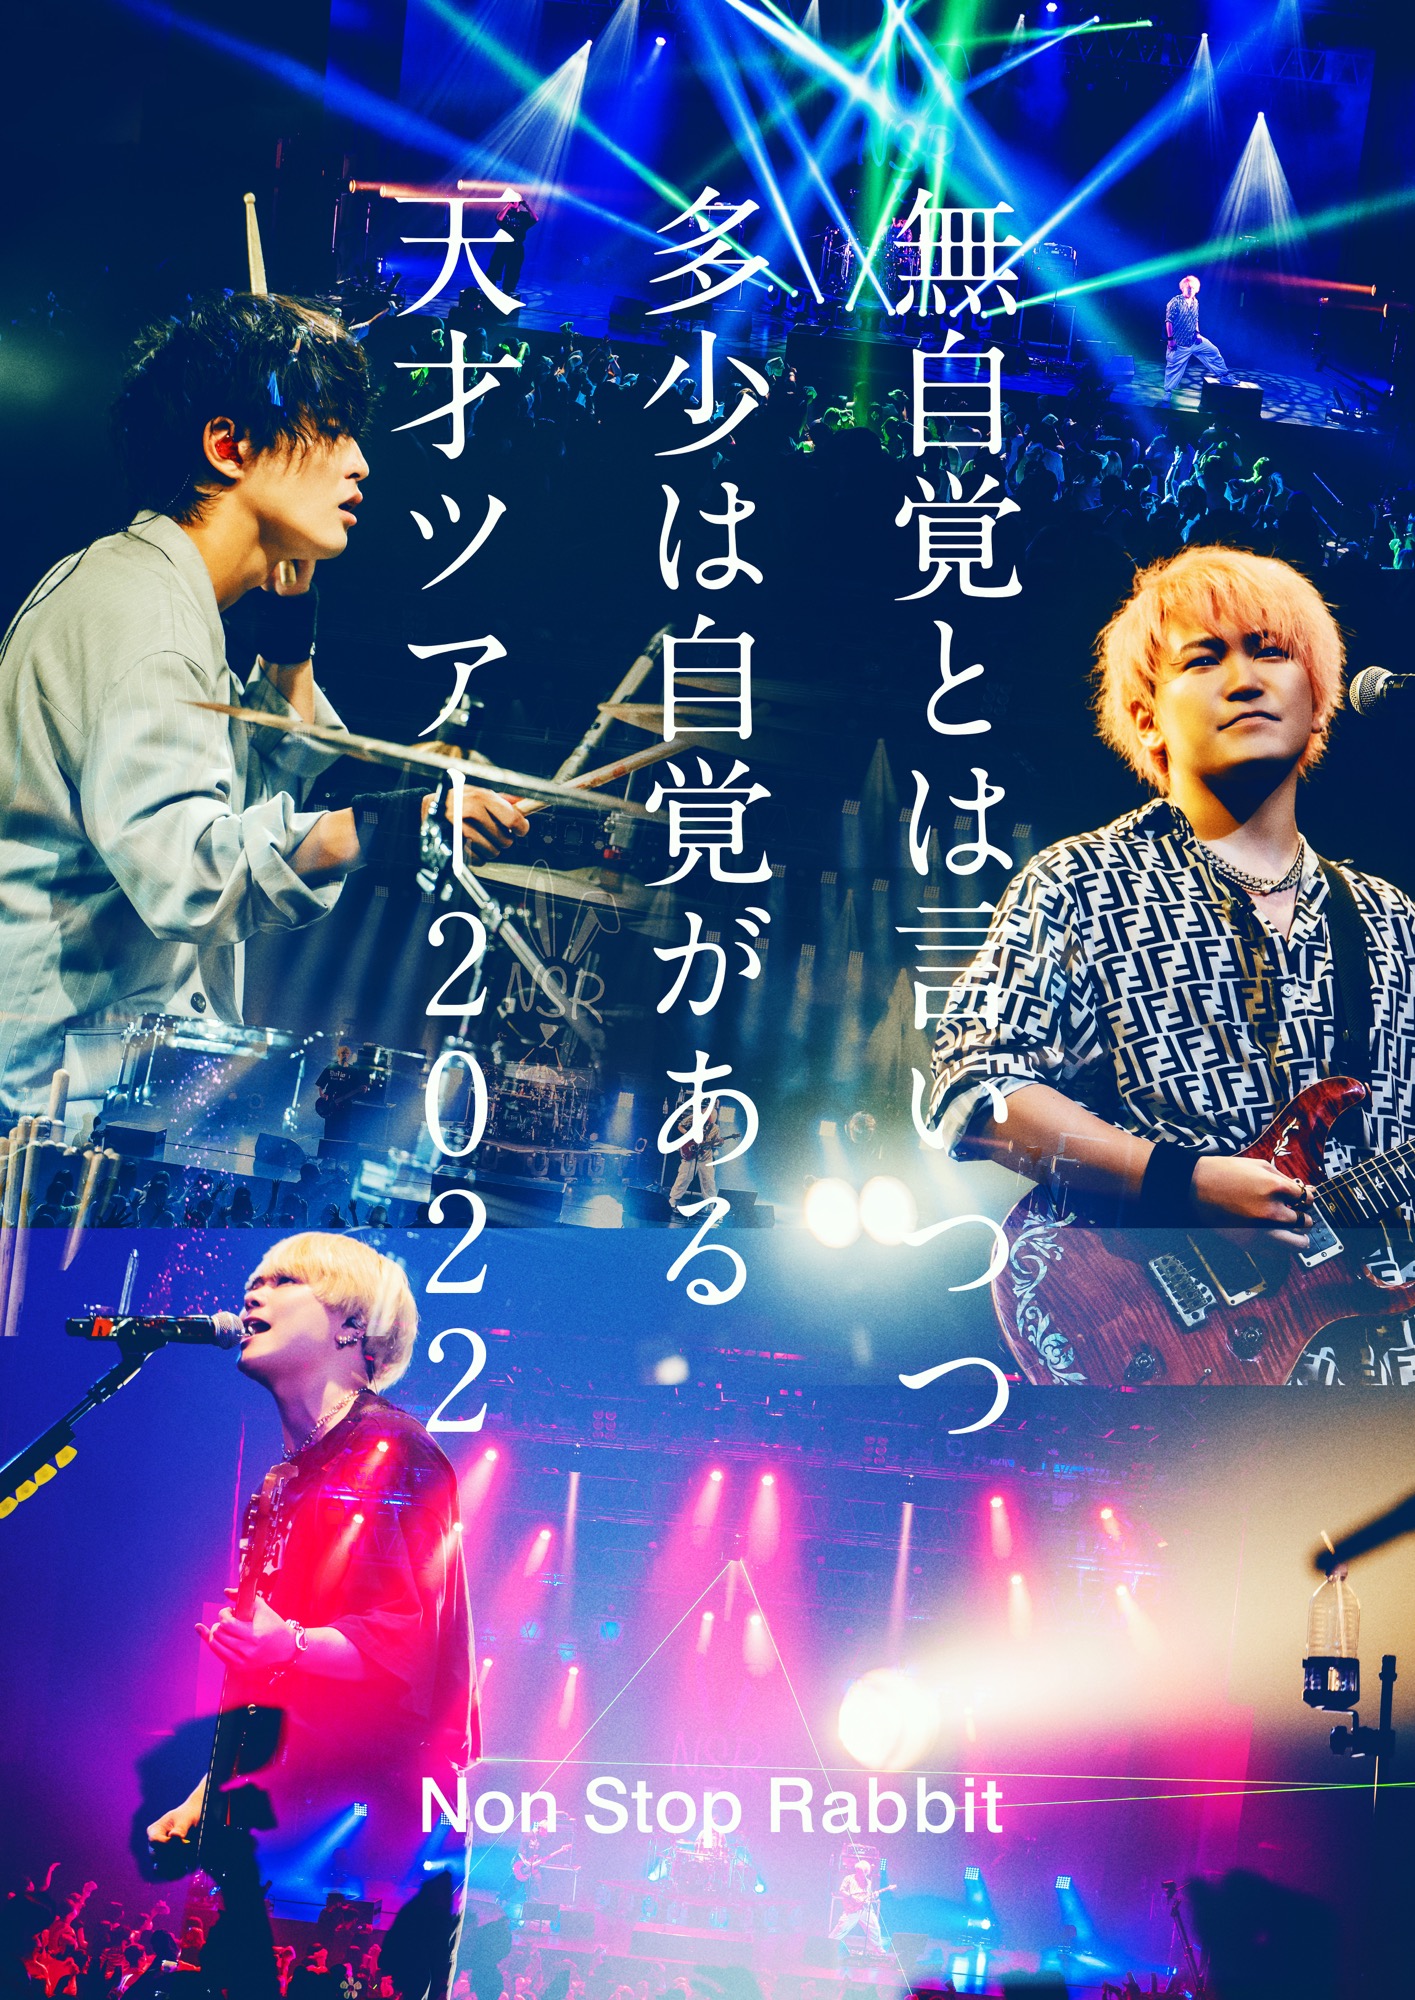 Non Stop Rabbit "Mujikakutowaiitsutsu Tashowajikakugaaru Tensai Tour 2022" Limited Edition (DVD+CD) Release on March 8th, 2023